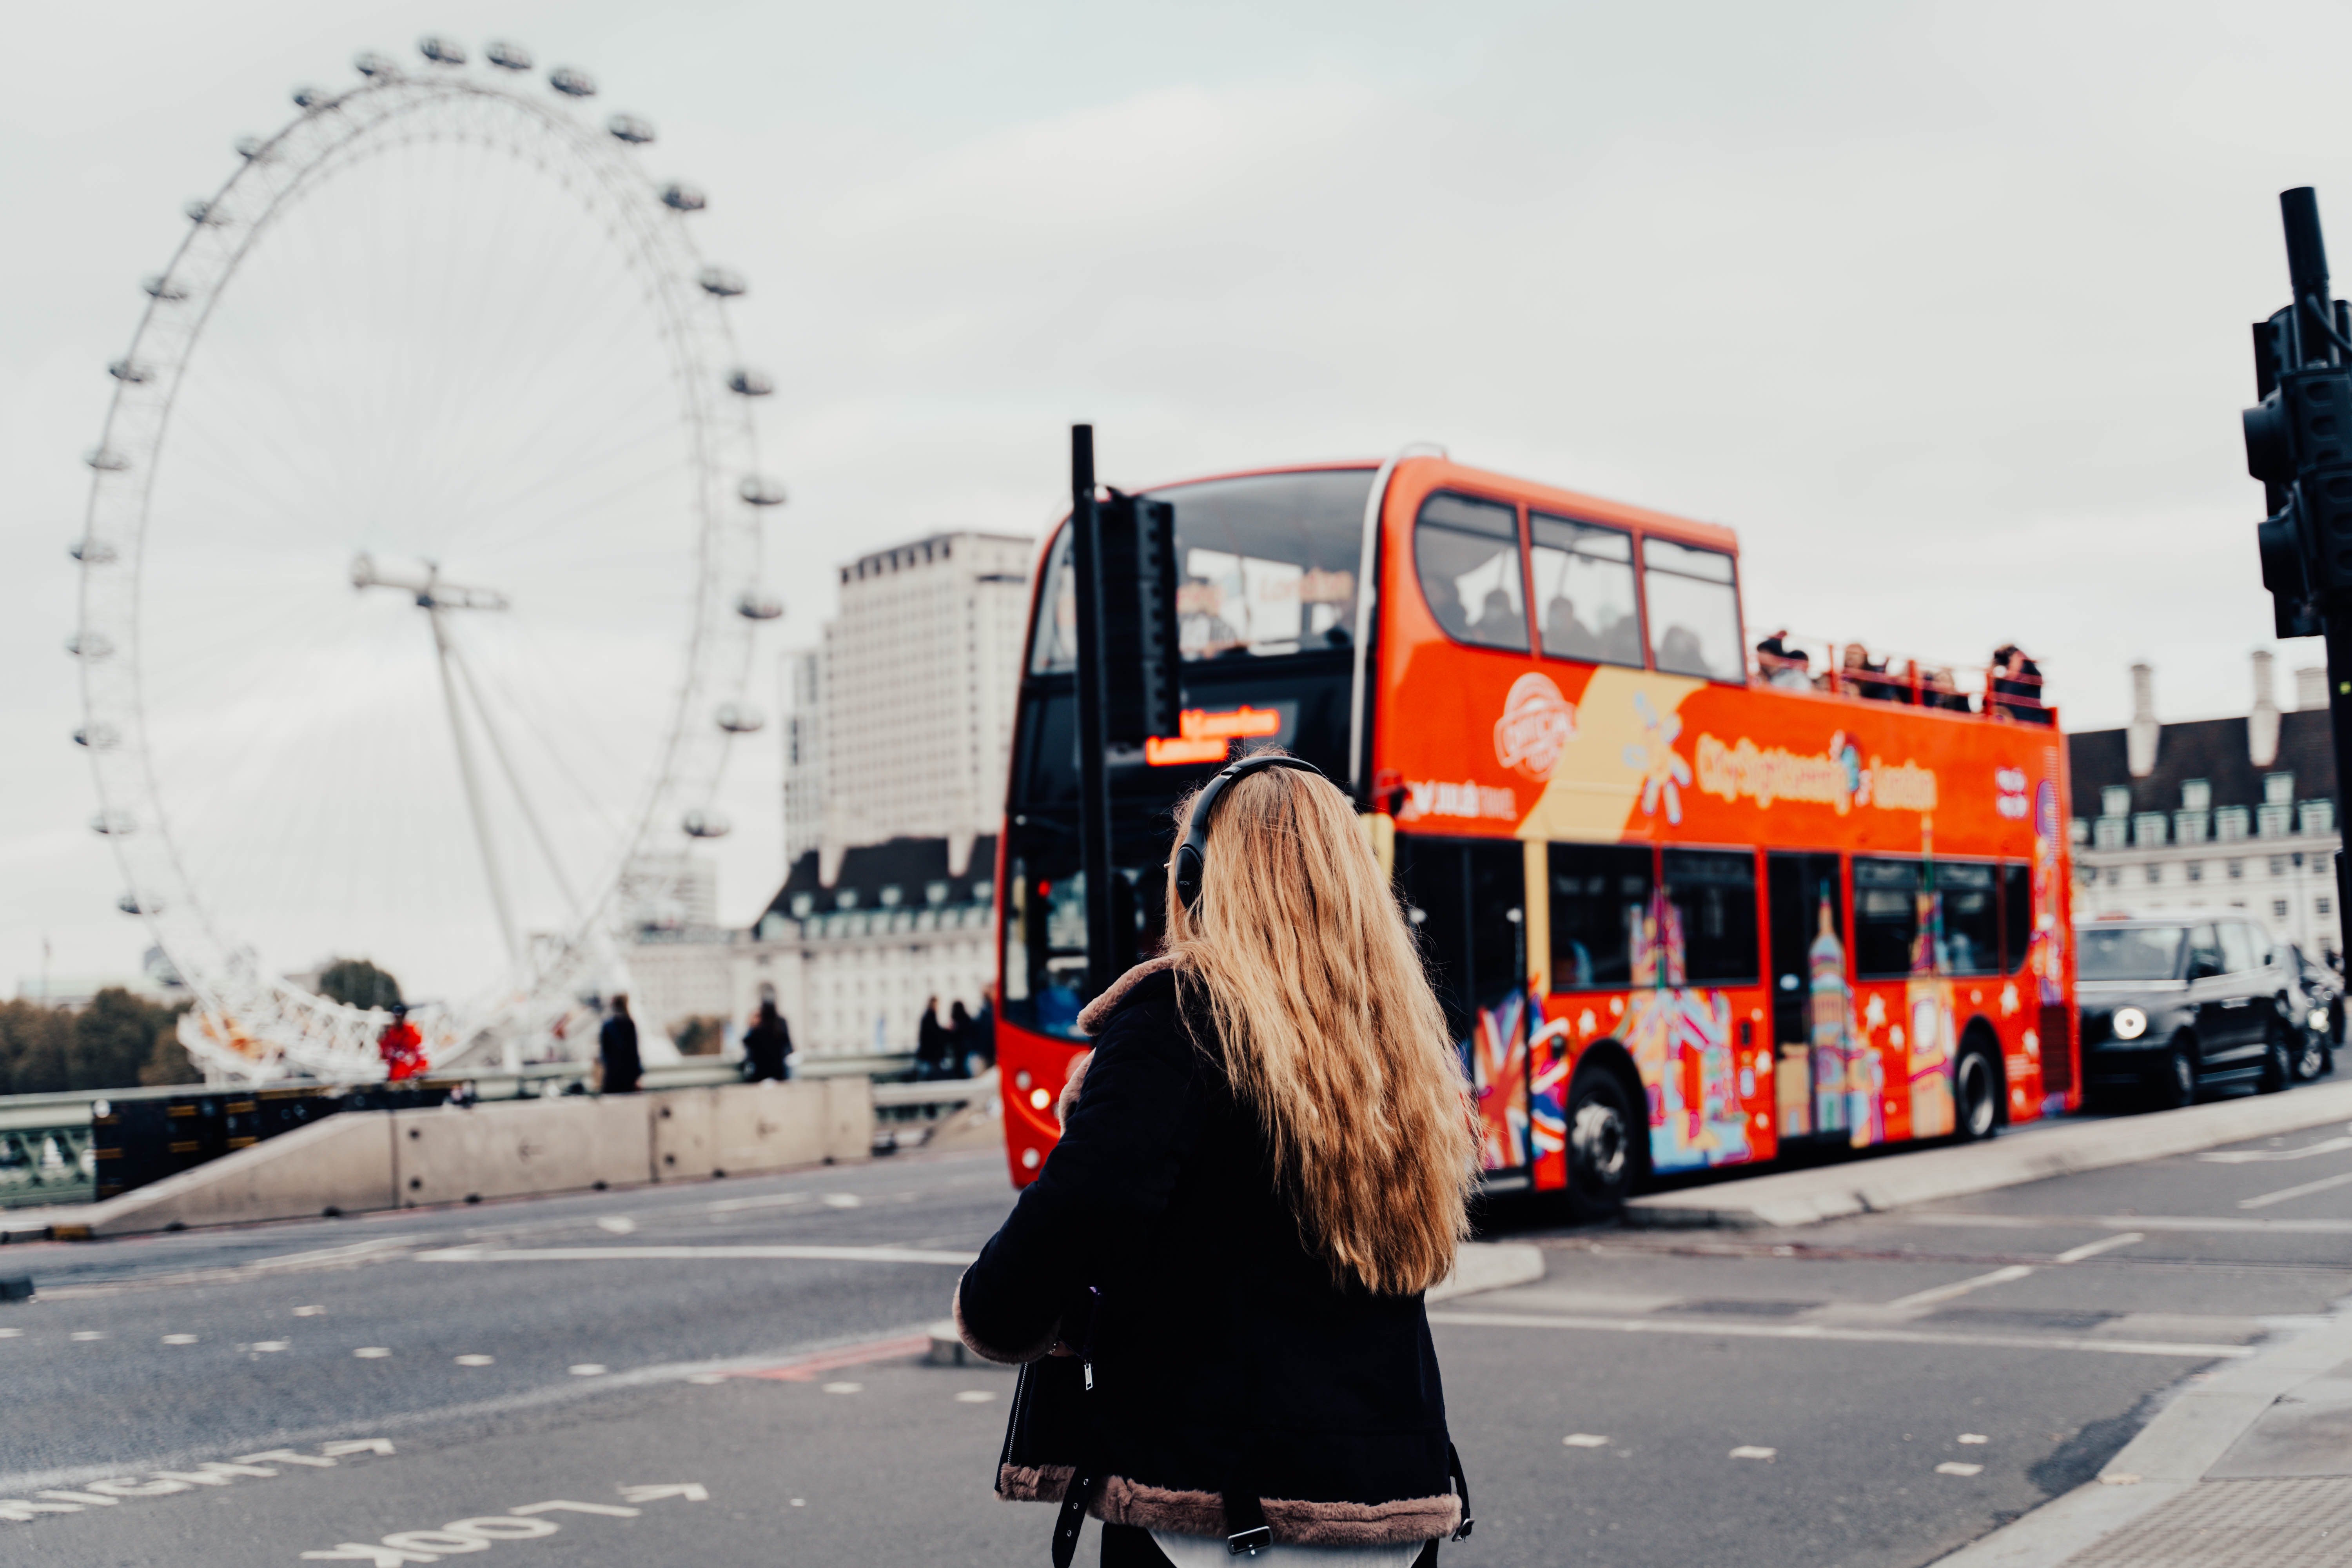 Bus merah London yang ikonik (Sumber gambar: Unsplash/Anna Claire)